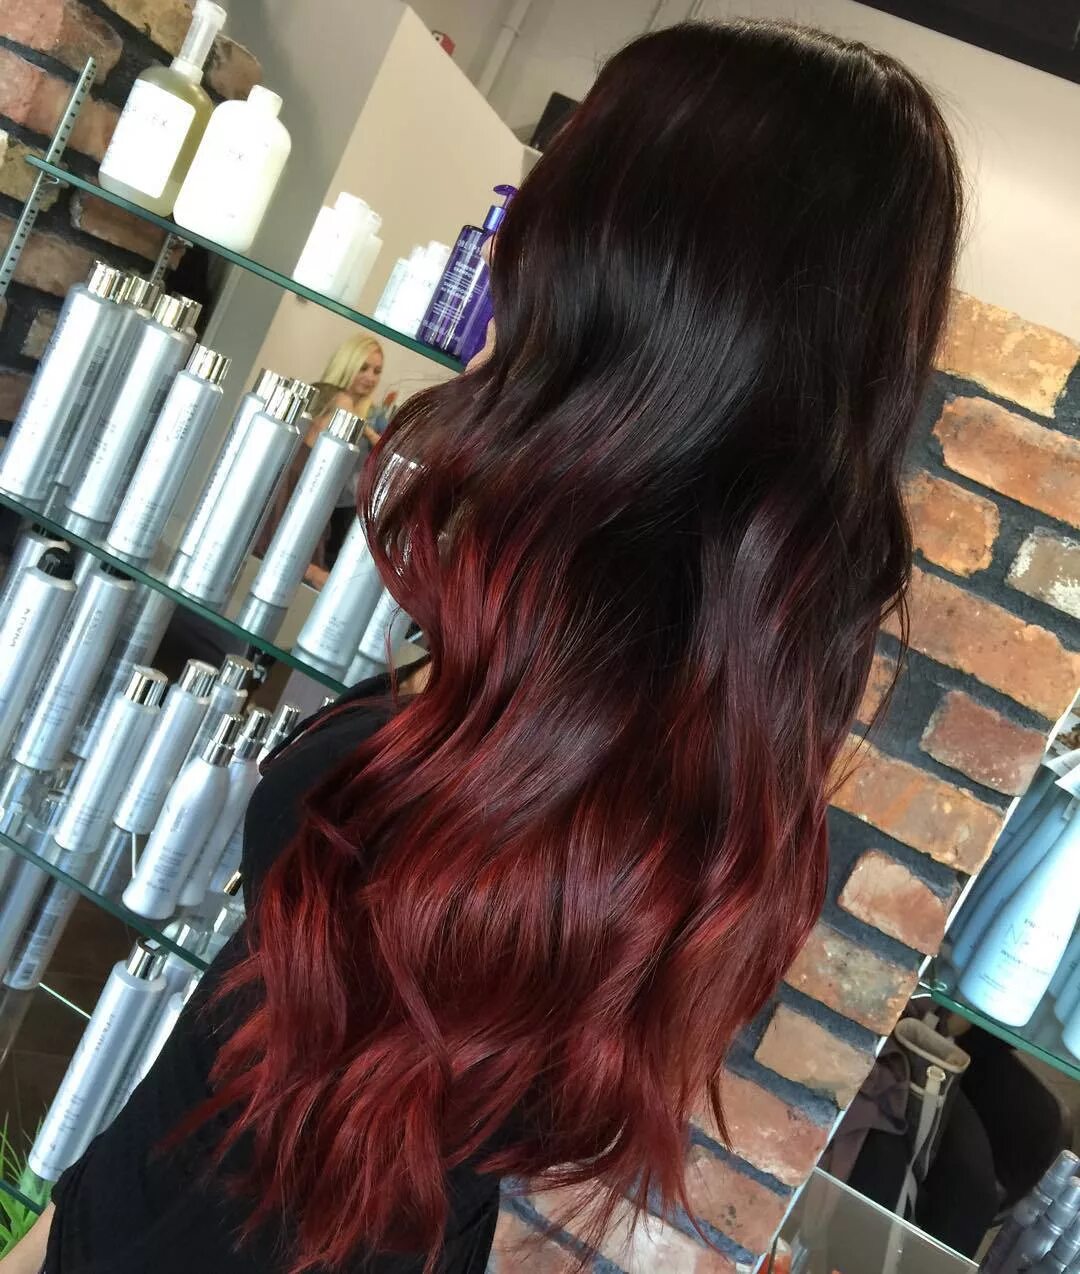 Черно красные волосы длинные. Окрашивание на темные волосы длинные. Красное омбре на темные волосы. Окрашивание волос на длинные волосы. Окрашивание волос в красные оттенки.